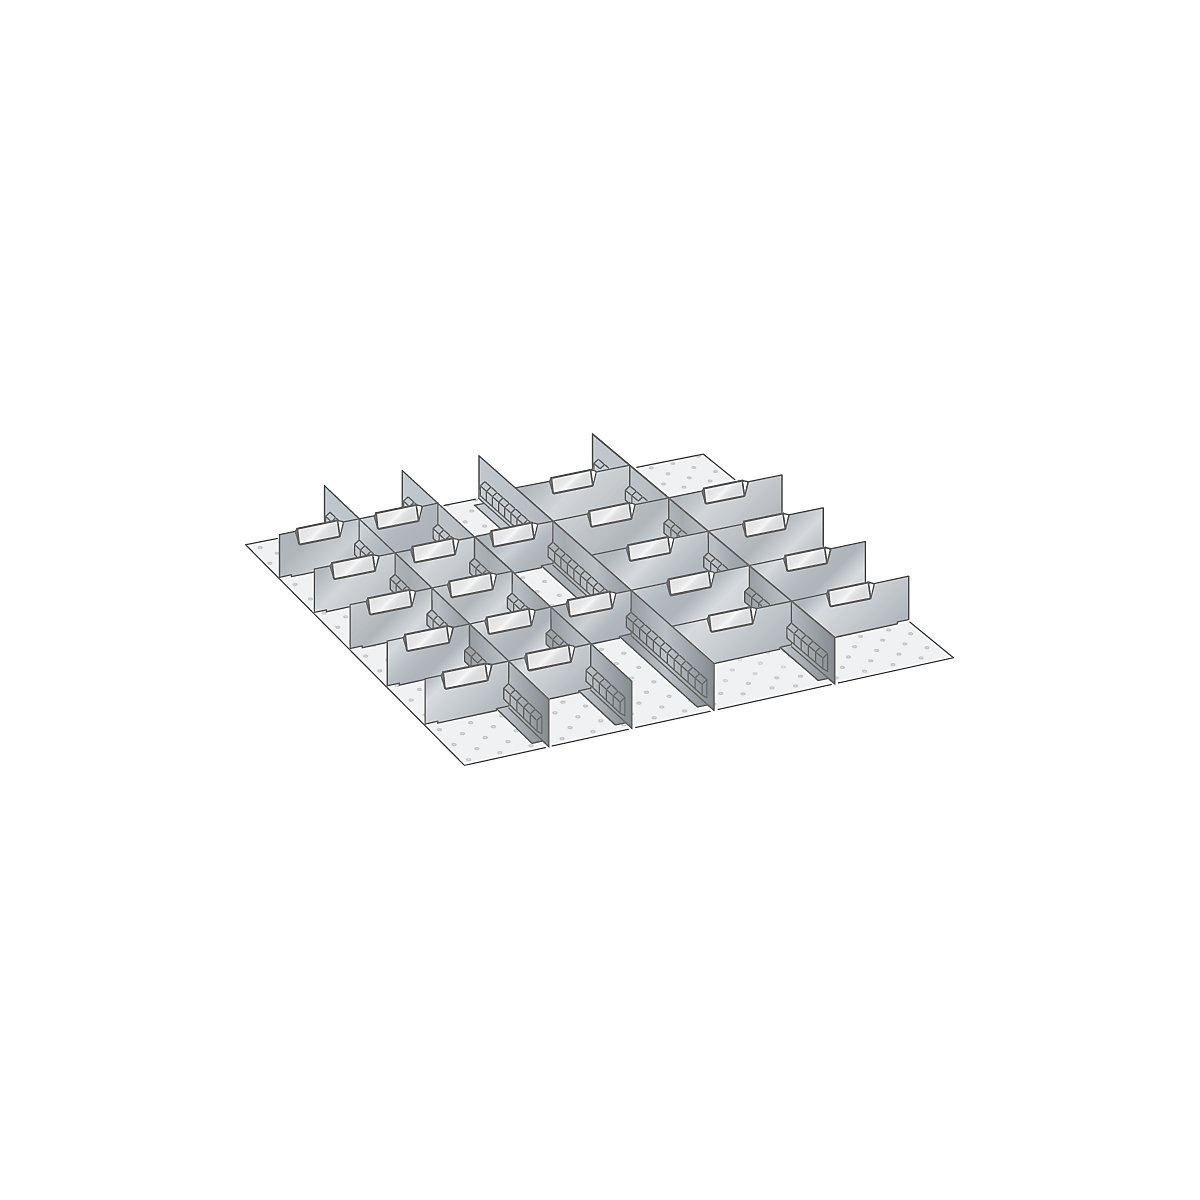 Kit d'éléments de compartimentation pour tiroirs – LISTA